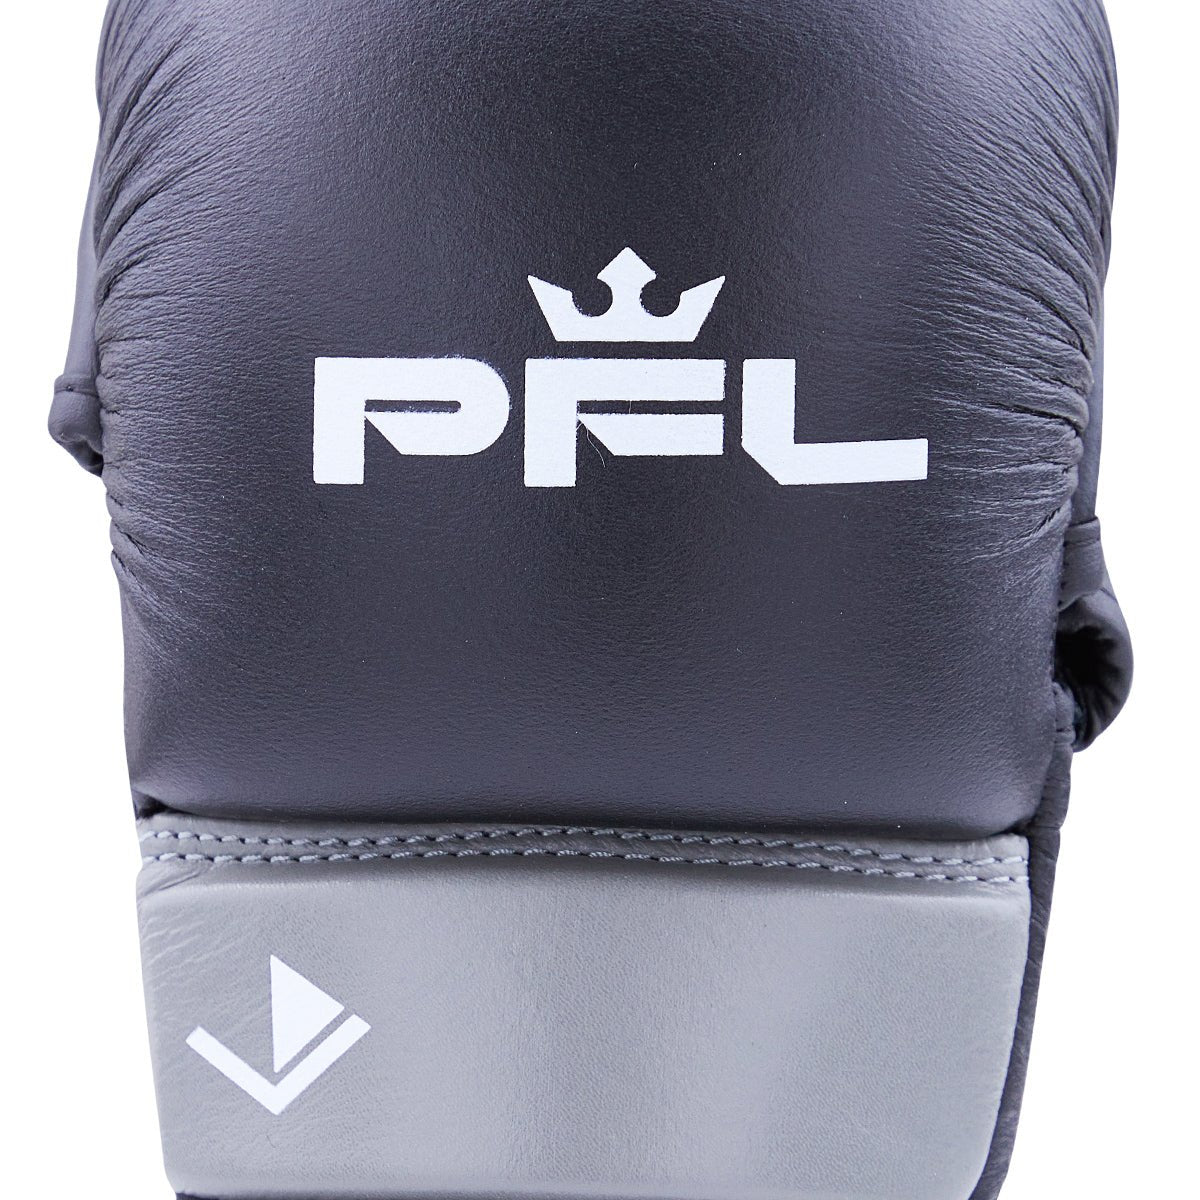 PFL Pro MMA Hybrid Training Glove